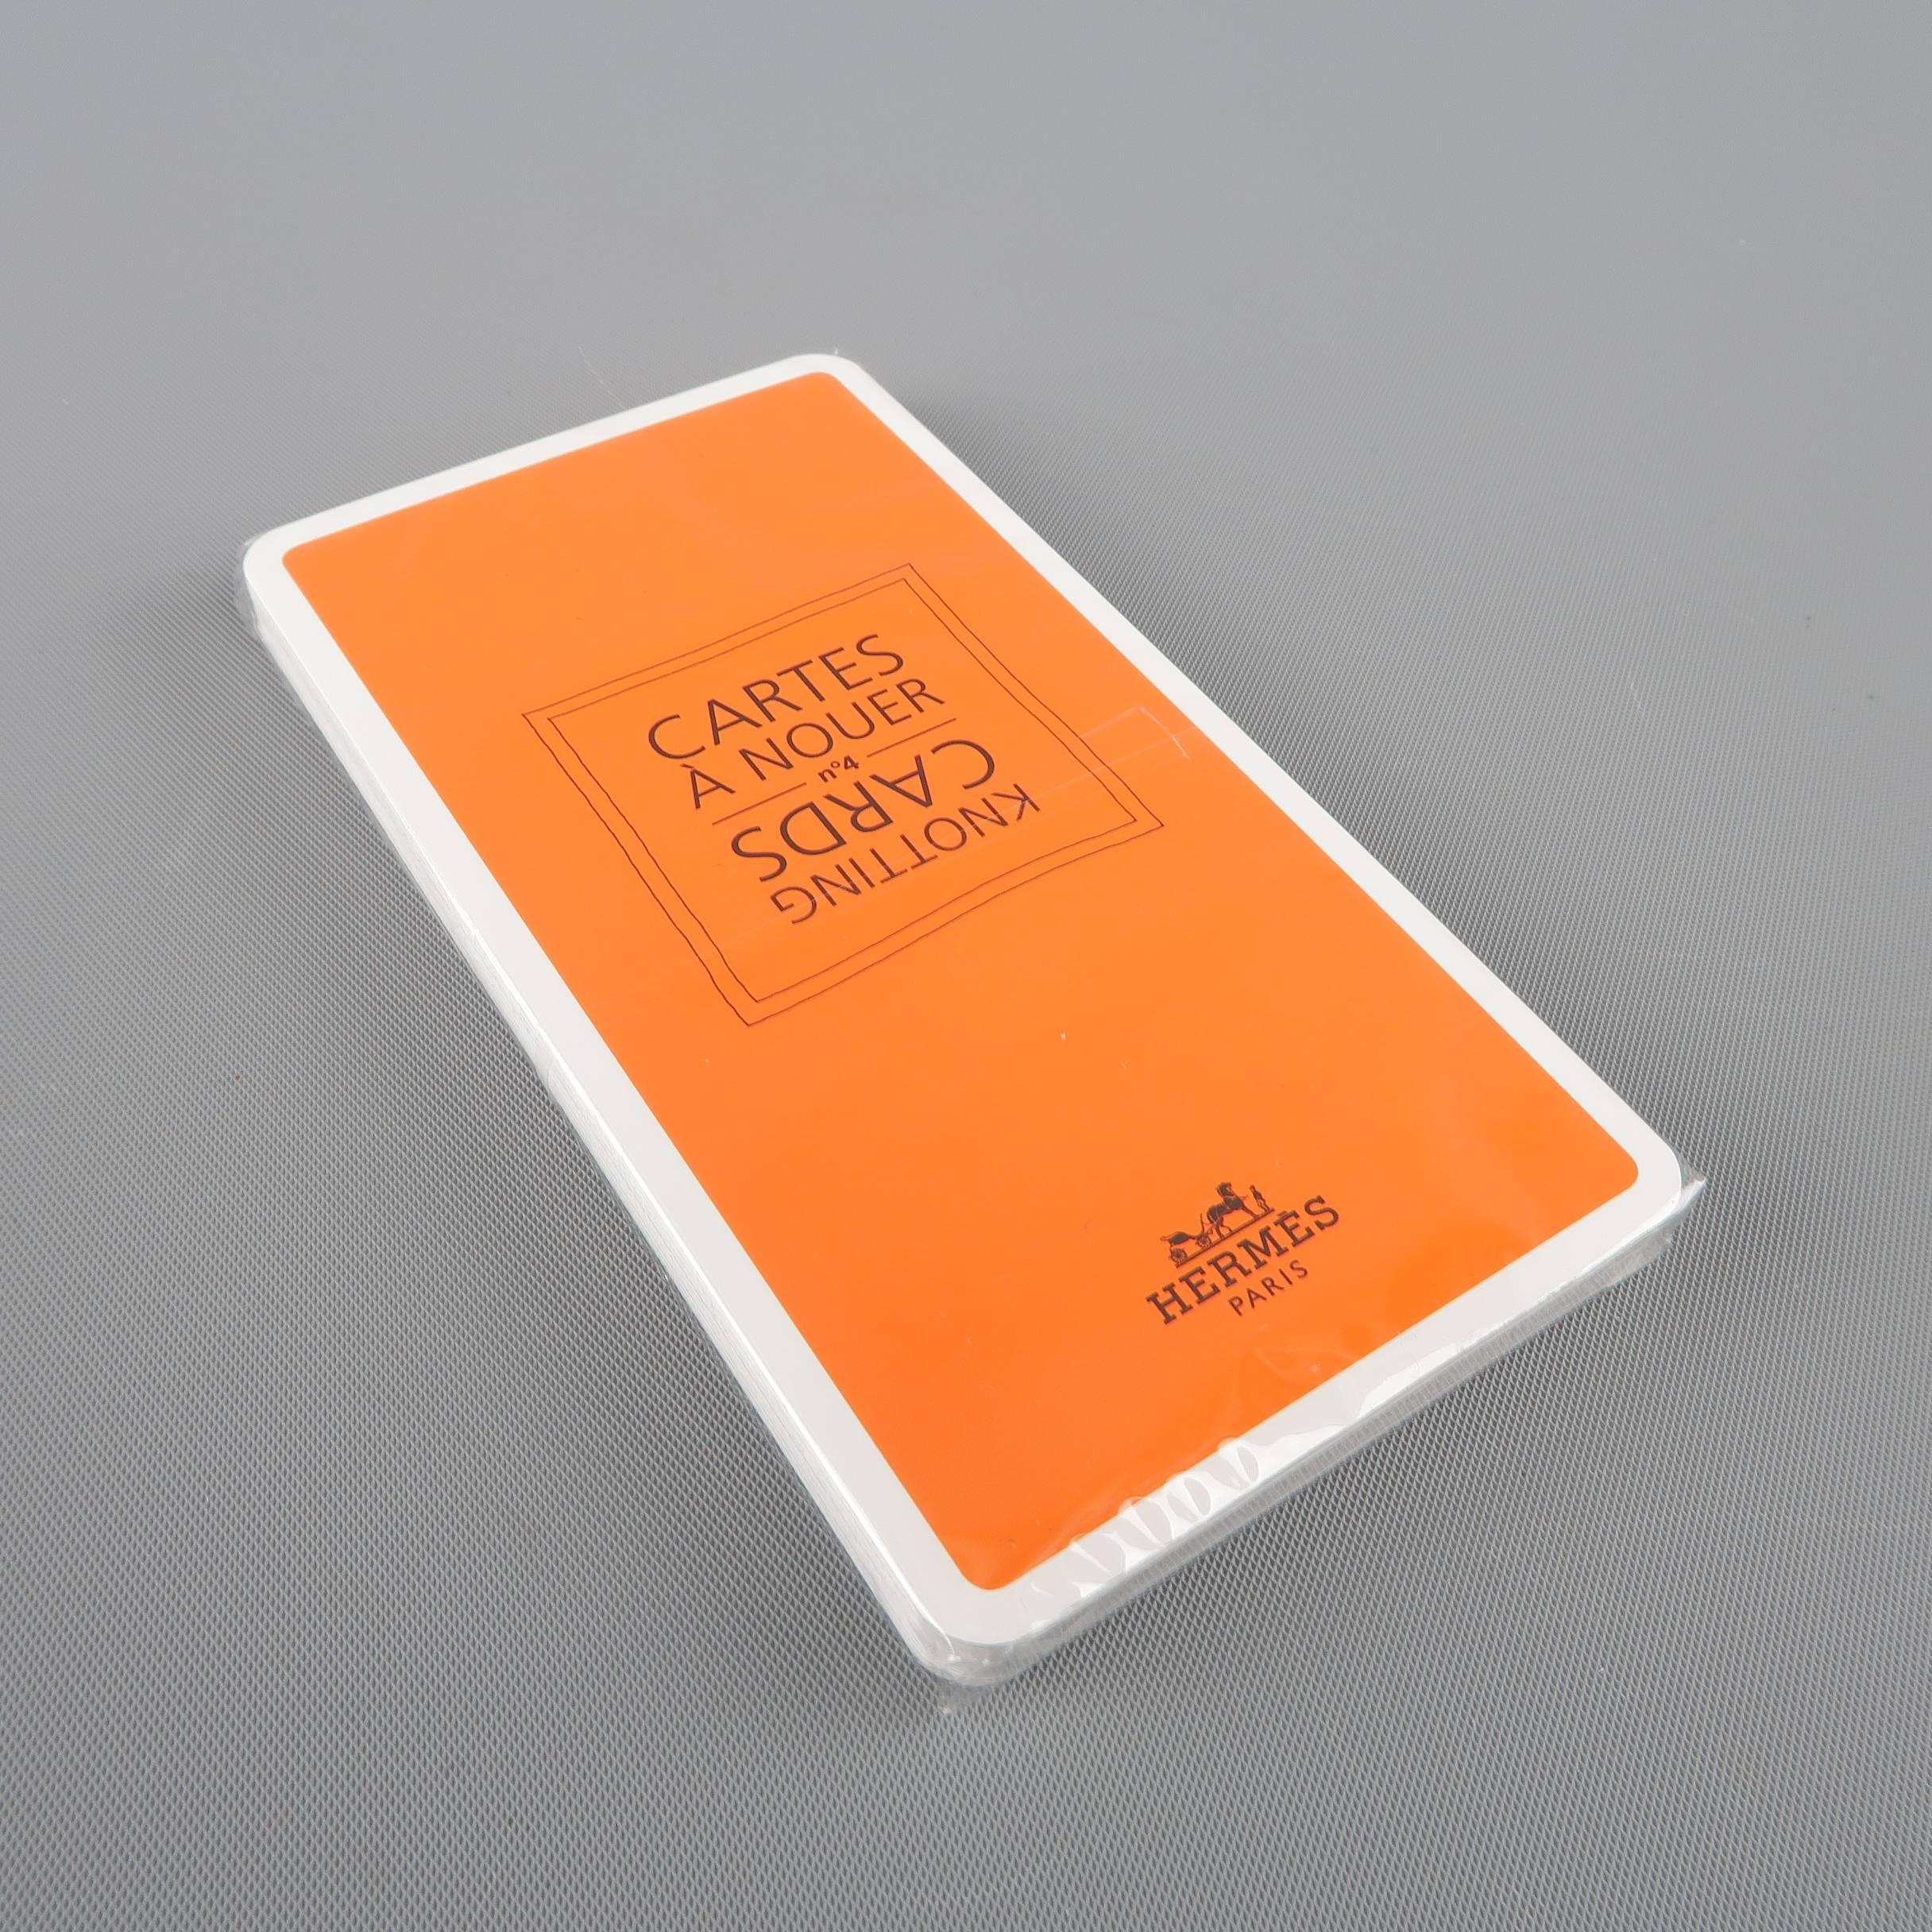 HERMES Orange CARTES A NOUER Knotting Cards 3